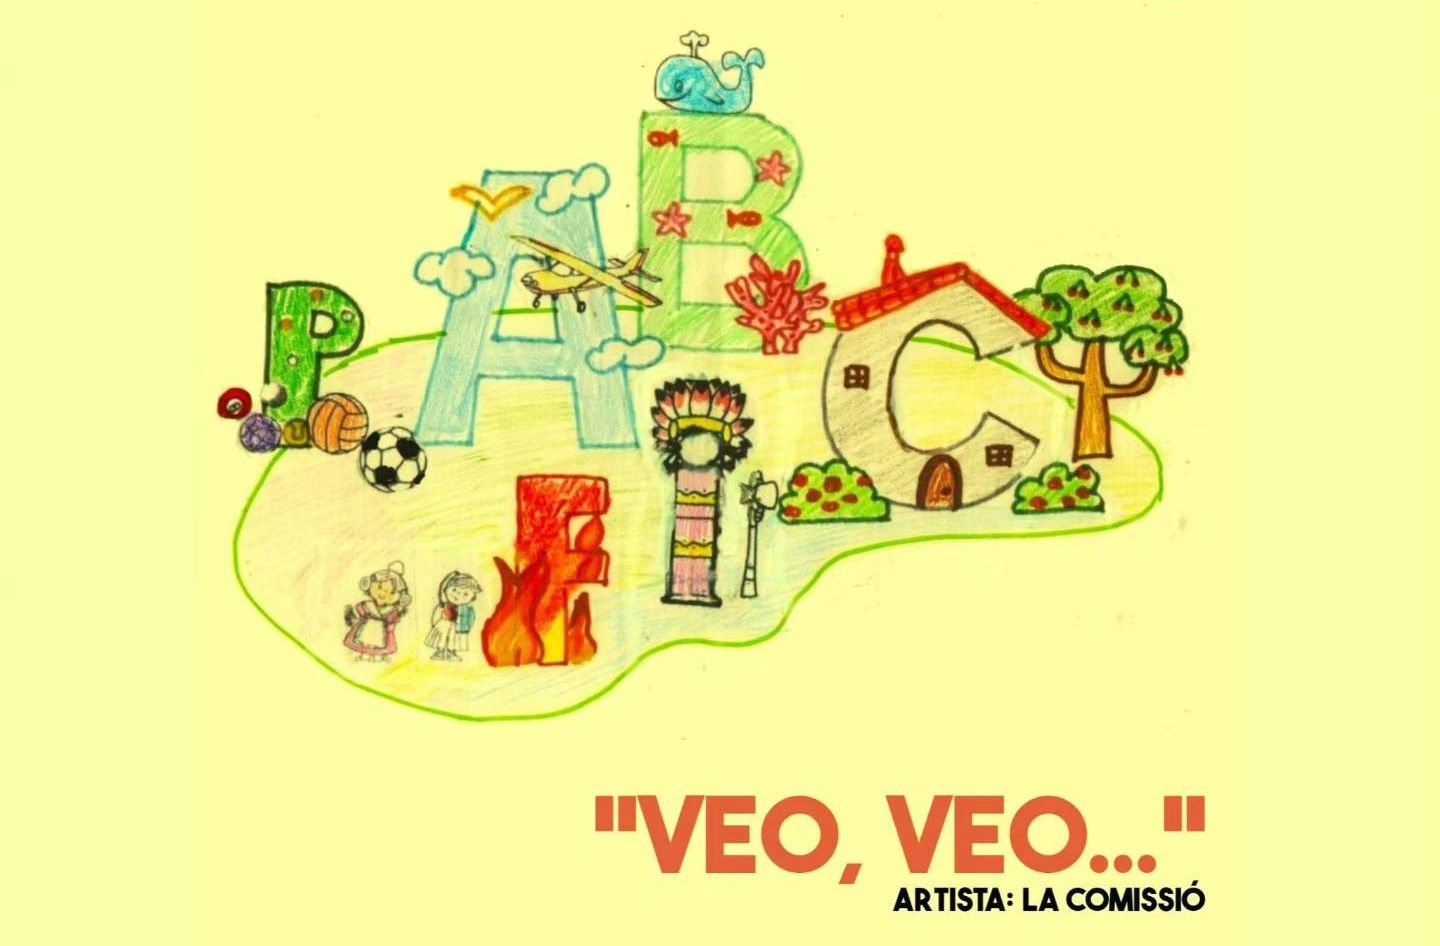 Cadíz-Cura Femenía-Puerto Rico infantil.  Artista: La comisión. "Veo, veo…"